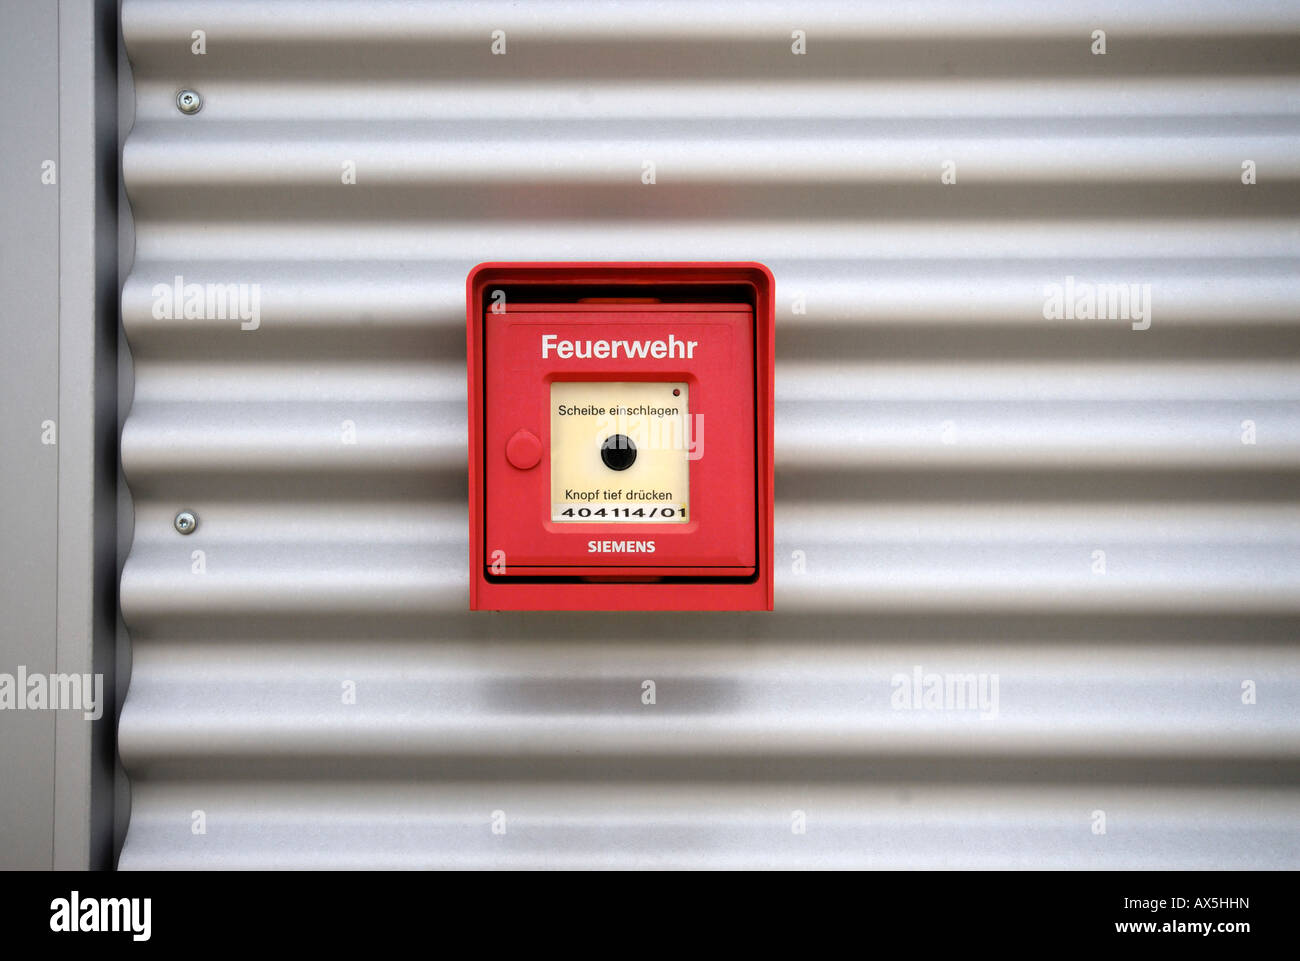 Fire alarm box on an aluminium facade Stock Photo